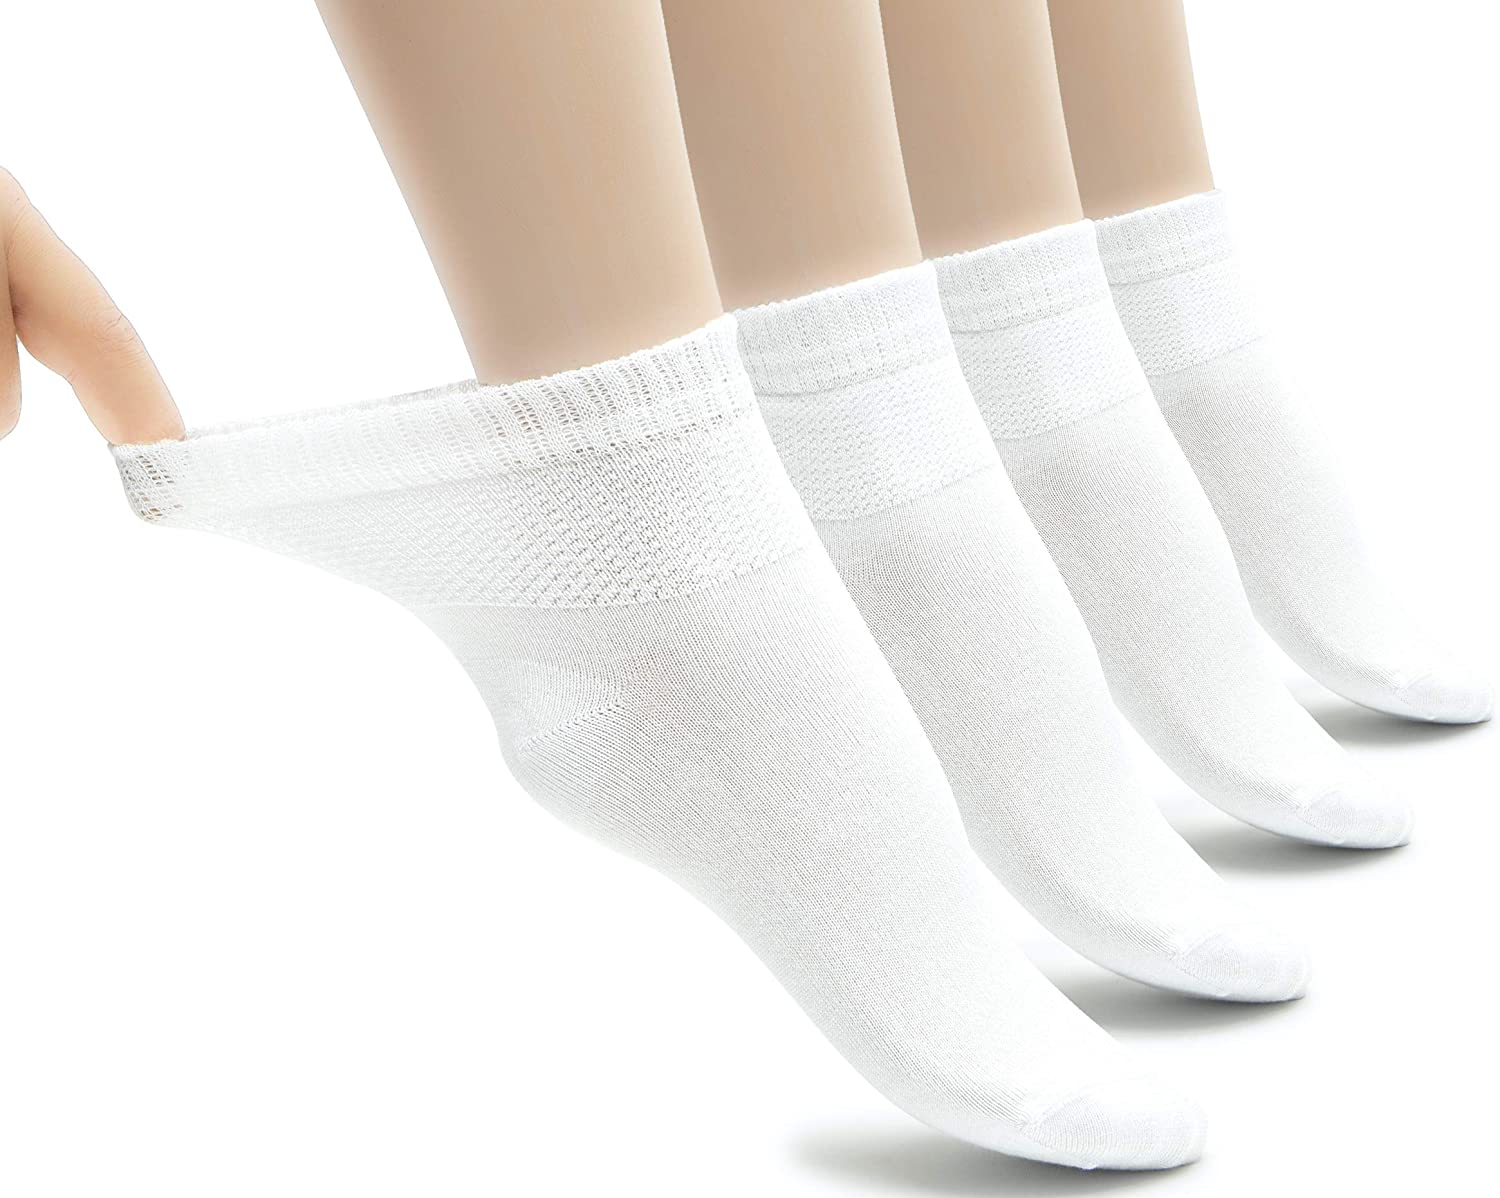 Hugh Ugoli Lightweight Women S Diabetic Ankle Socks Bamboo Thin White Size 6 0 Ebay